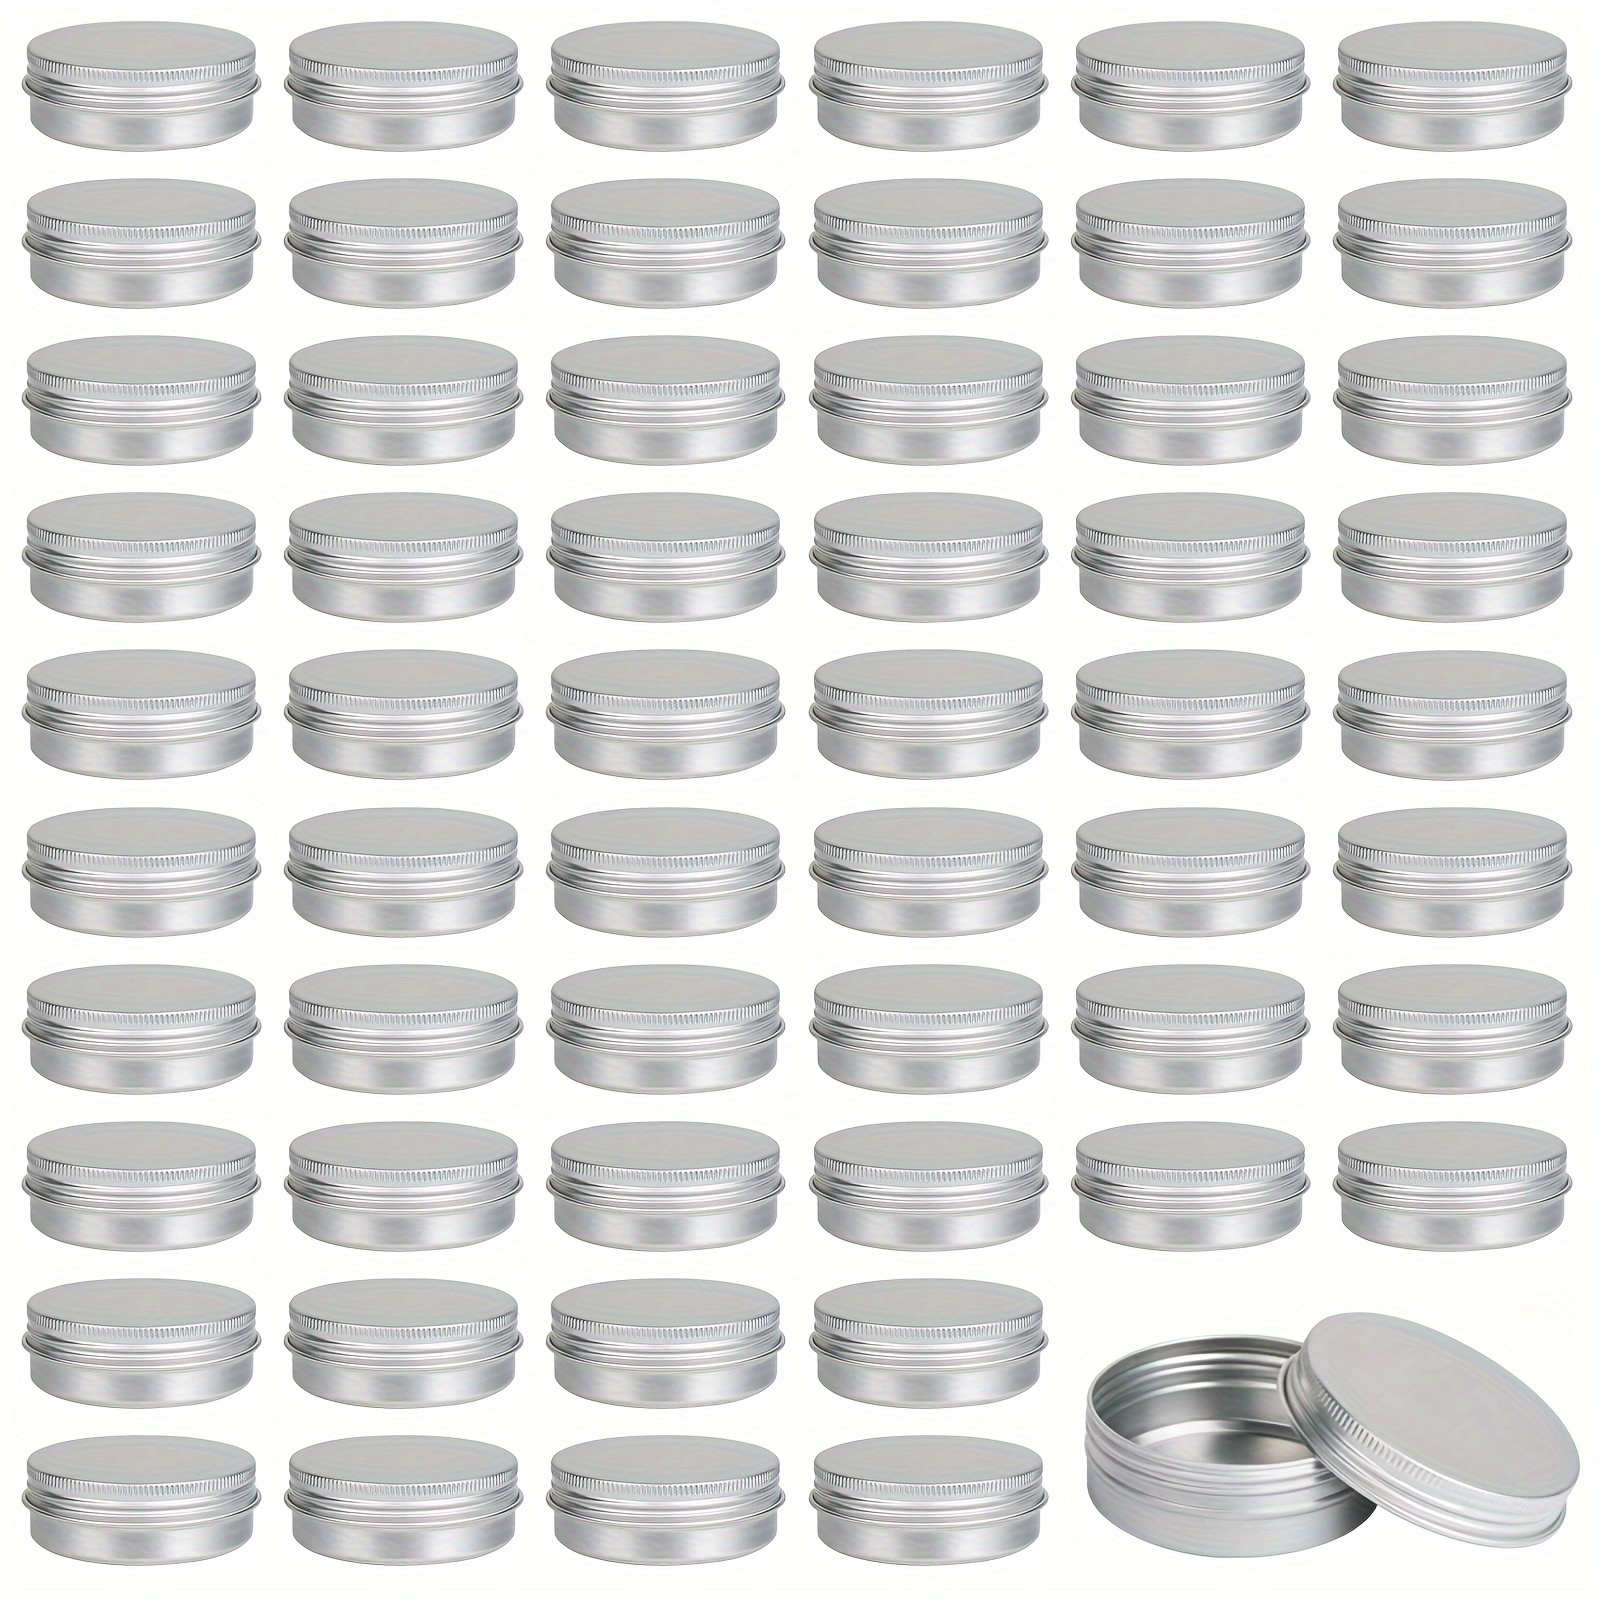 BUZIFU 12 Pcs Candle Tins, 2.5 oz Empty Candle Jars Candle Making Tin Jars  Metal Candle Tins Mini Candle Making Containers Candle Jars Metal Tins with